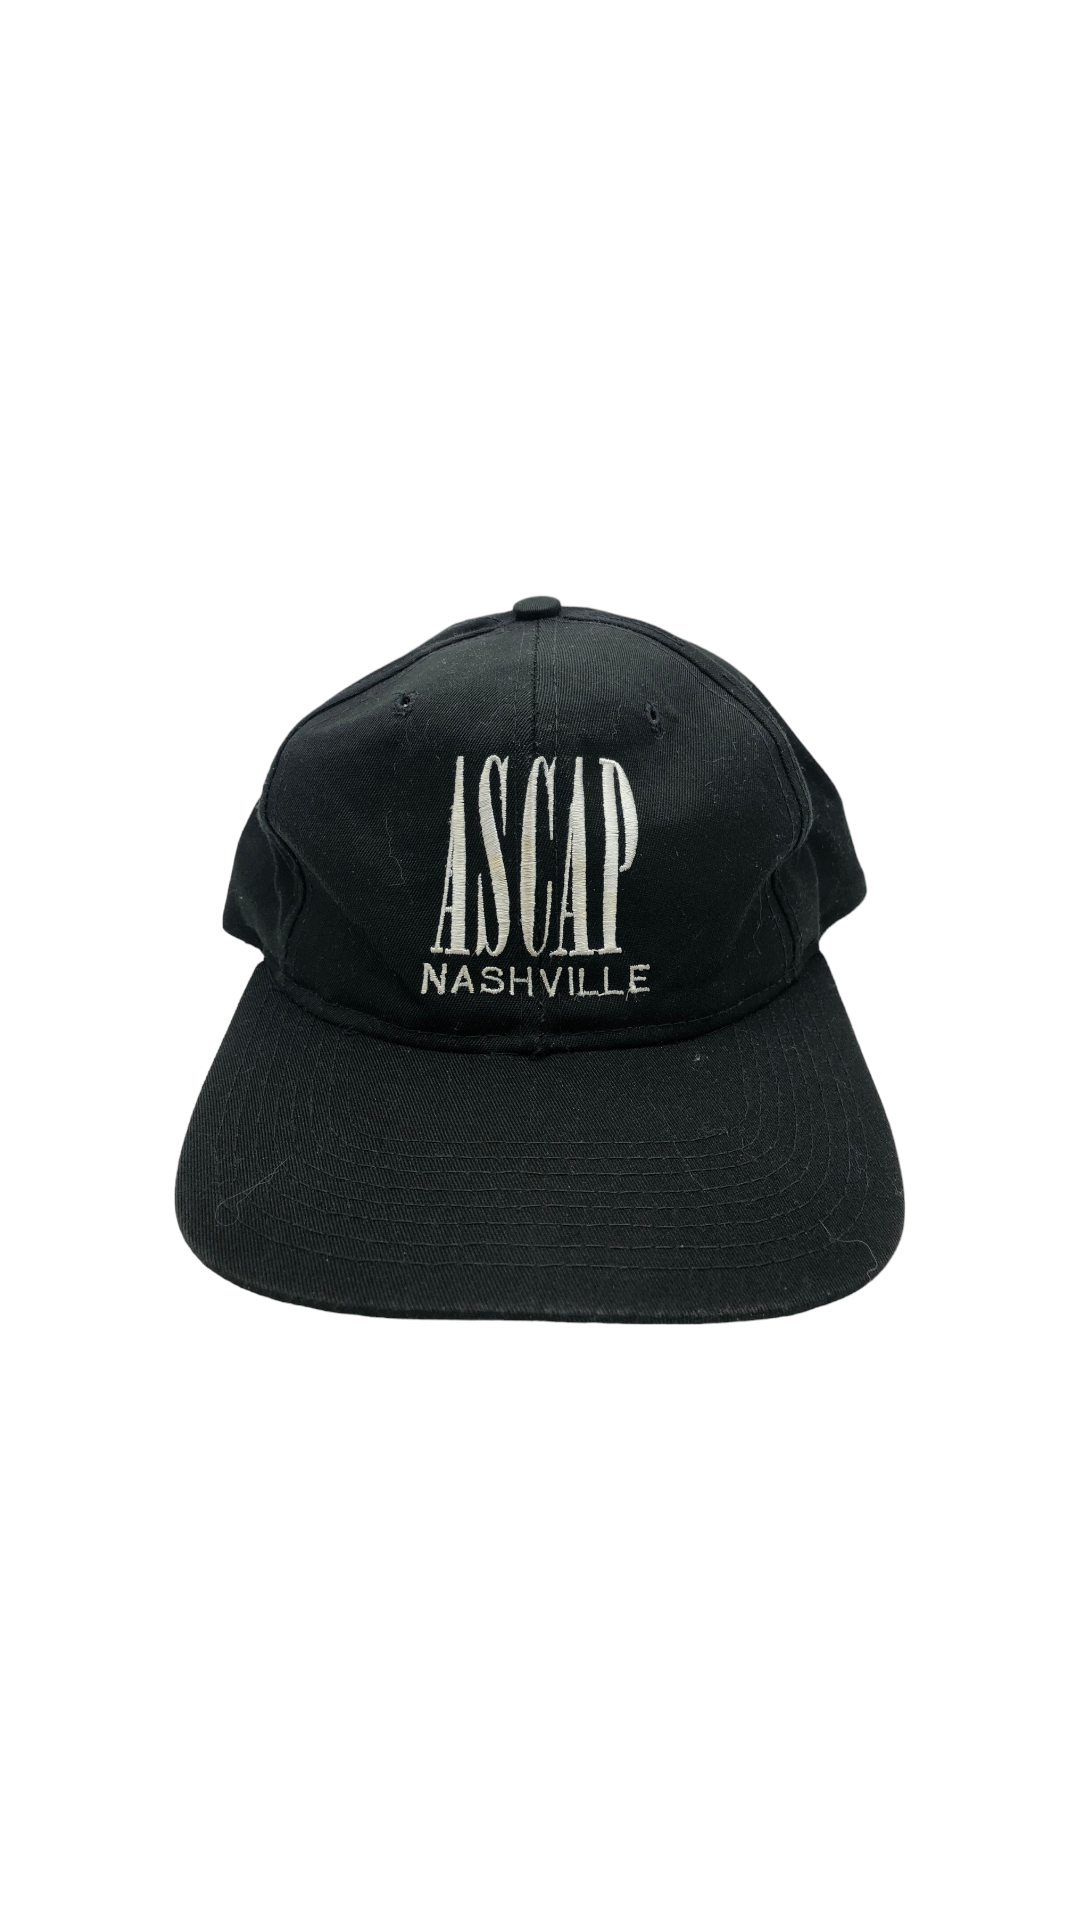 VTG Ascap Music Licensing Nashville Hat